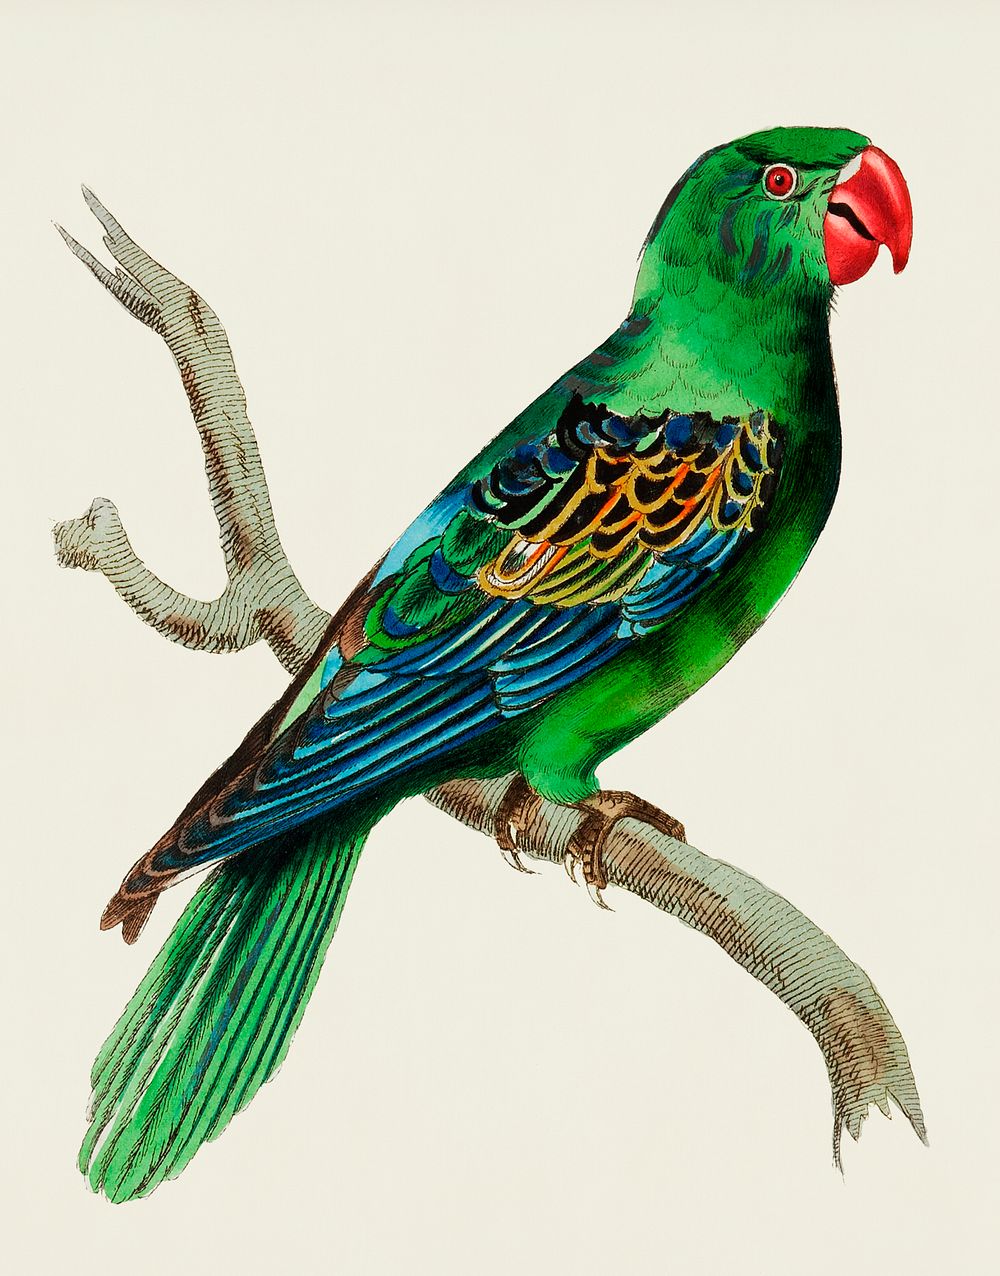 Vintage Illustration of Great-billed Parrot